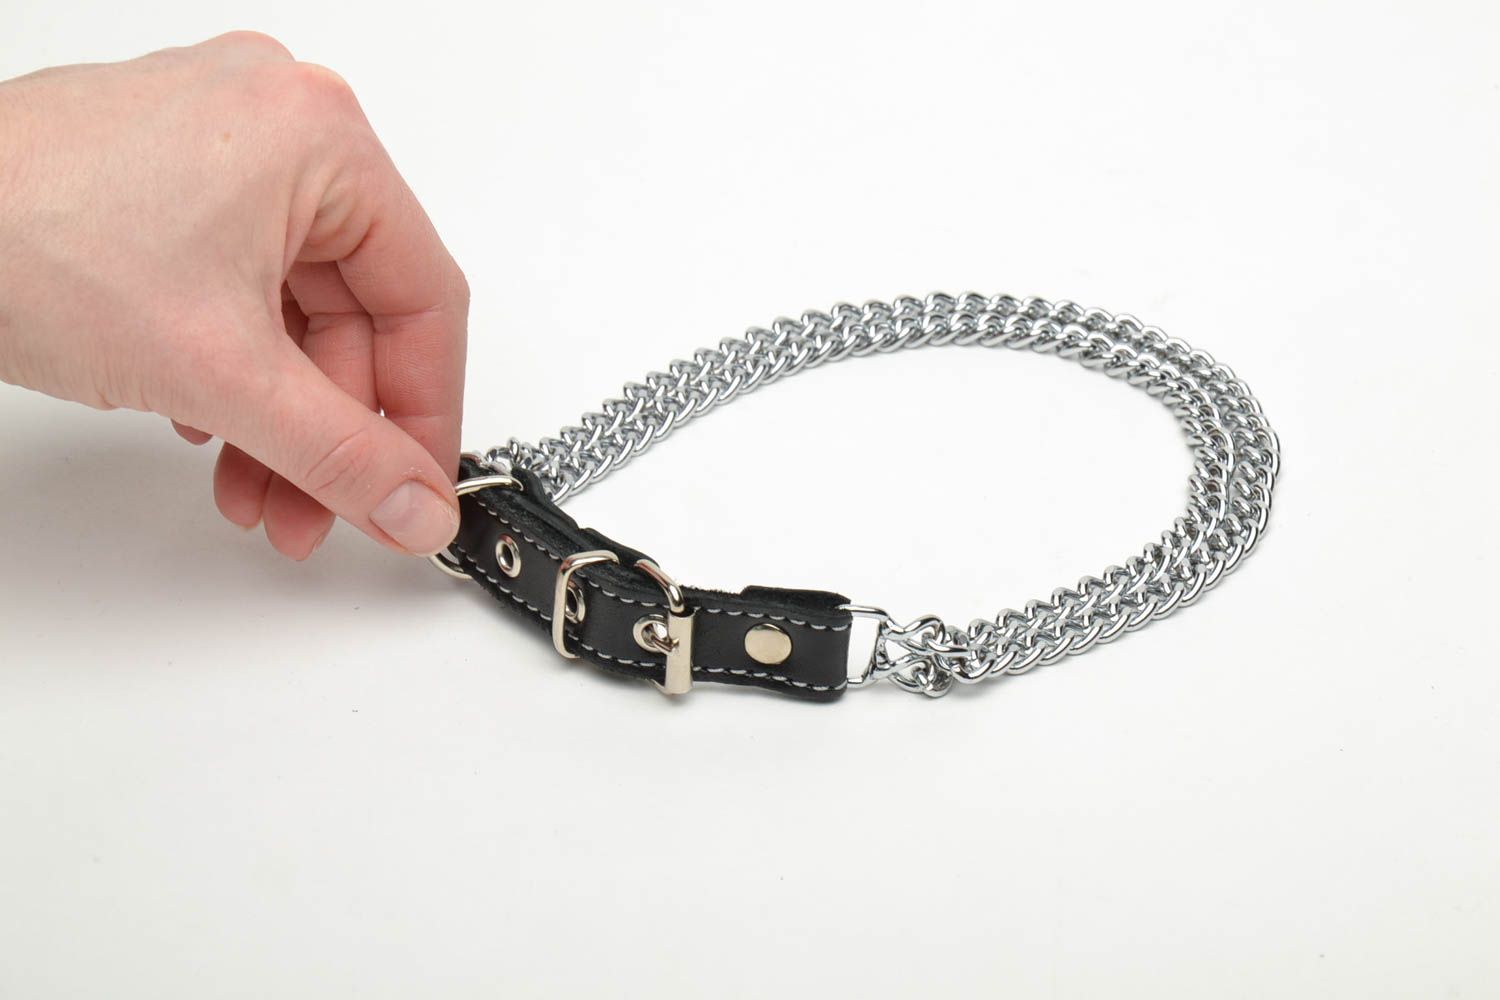 Metall Halsband für Hund in Schwarz 44892258 KAUFEN SIE HANDGEMACHTE